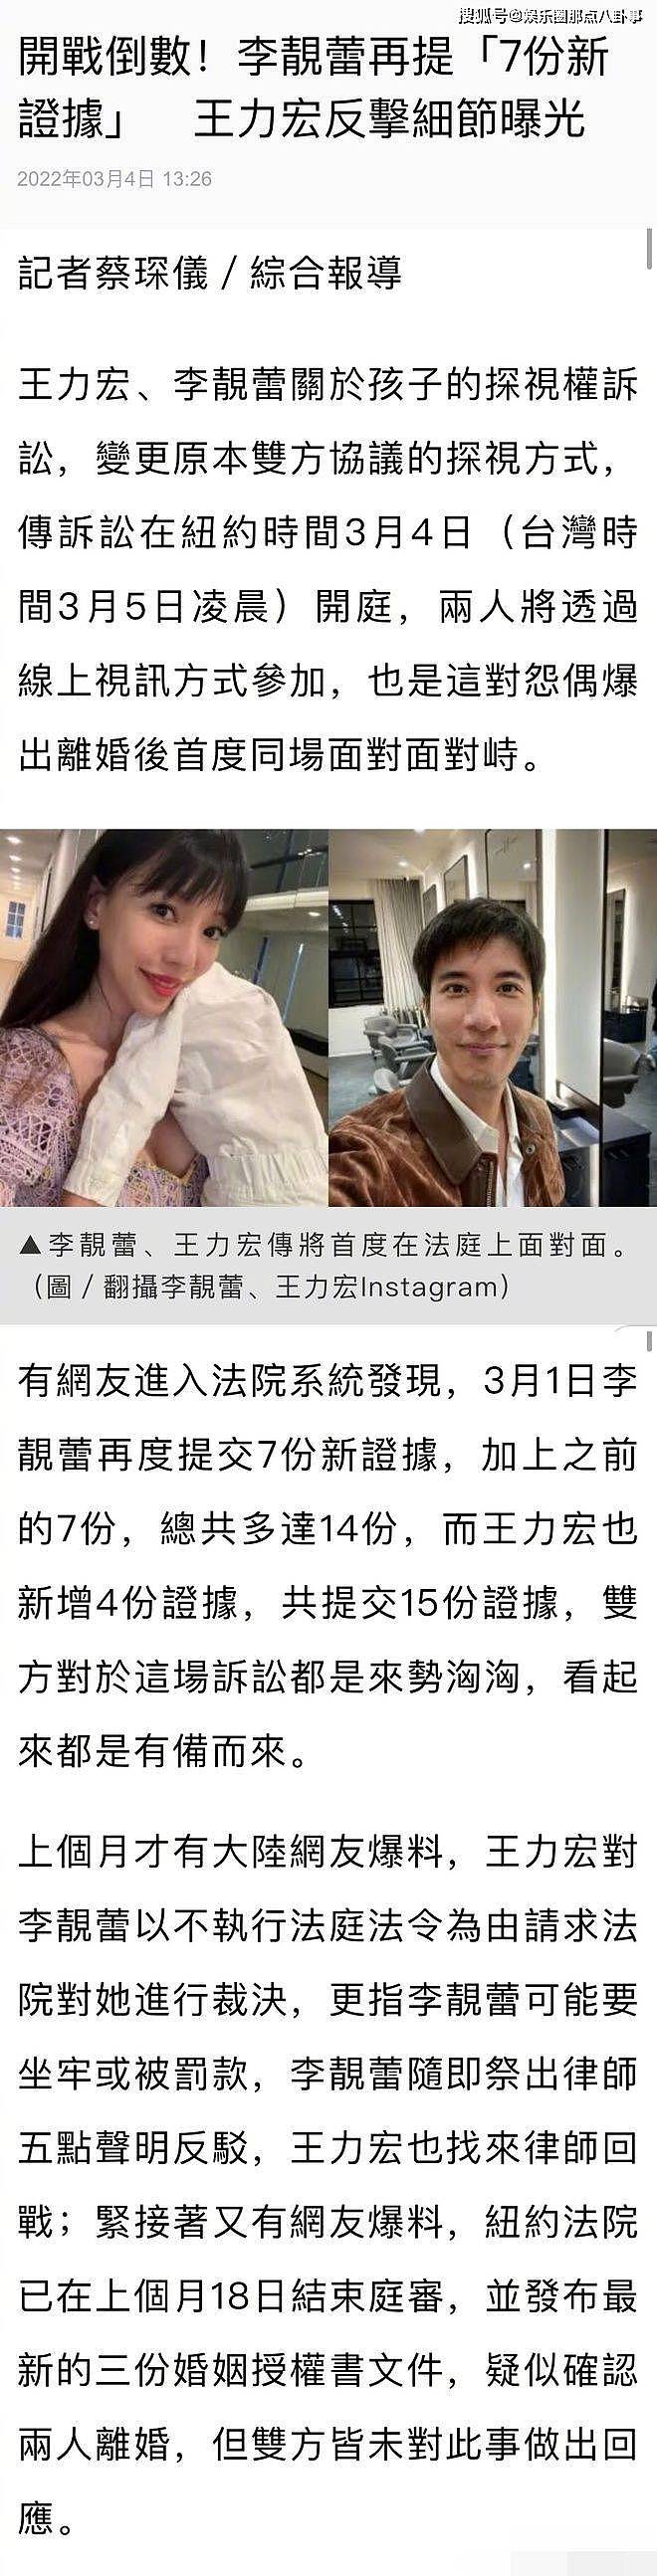 王力宏离婚官司明日开庭 李靓蕾新增7项证据对决 - 2